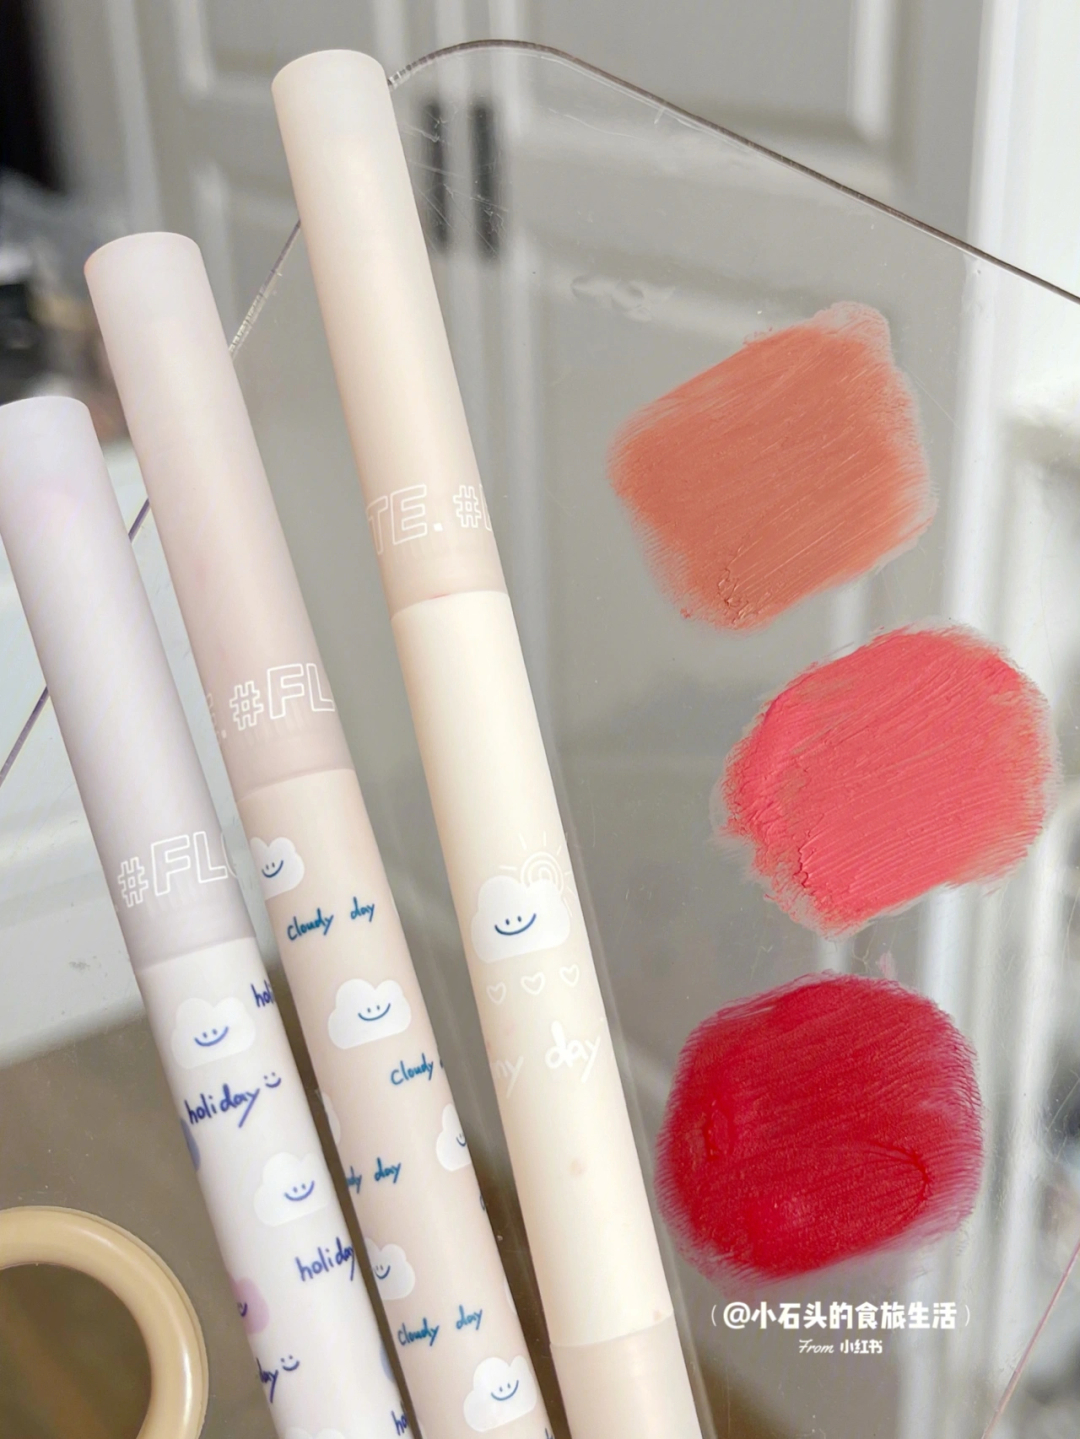 最近泰爱用花洛莉亚的唇线笔画唇妆了尤其是c04和c05两个颜色搭配!